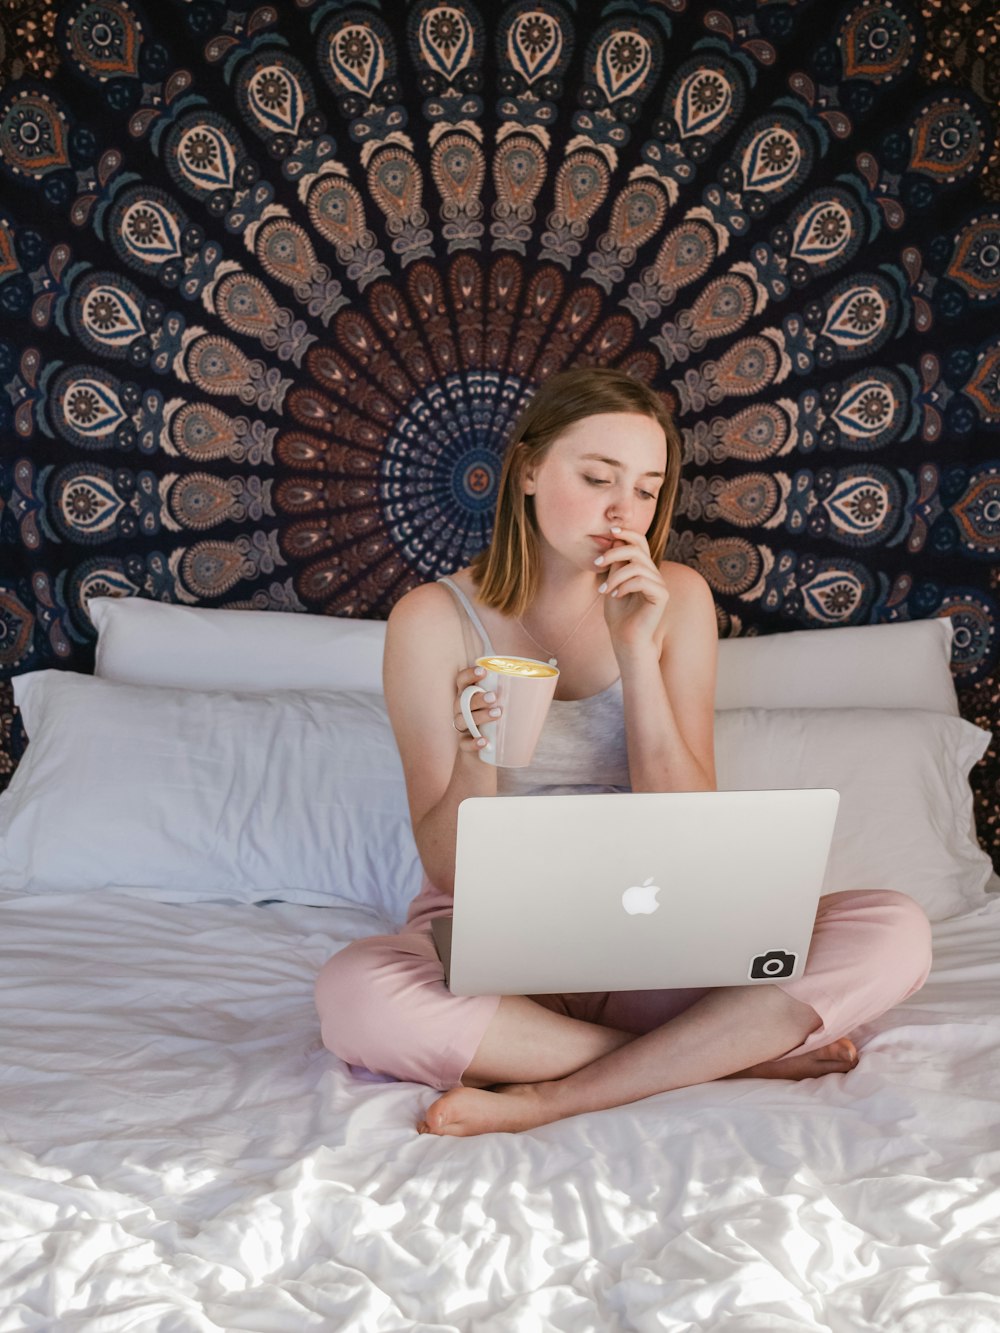 Frau benutzt MacBook und hält Tasse, während sie auf dem Bett sitzt